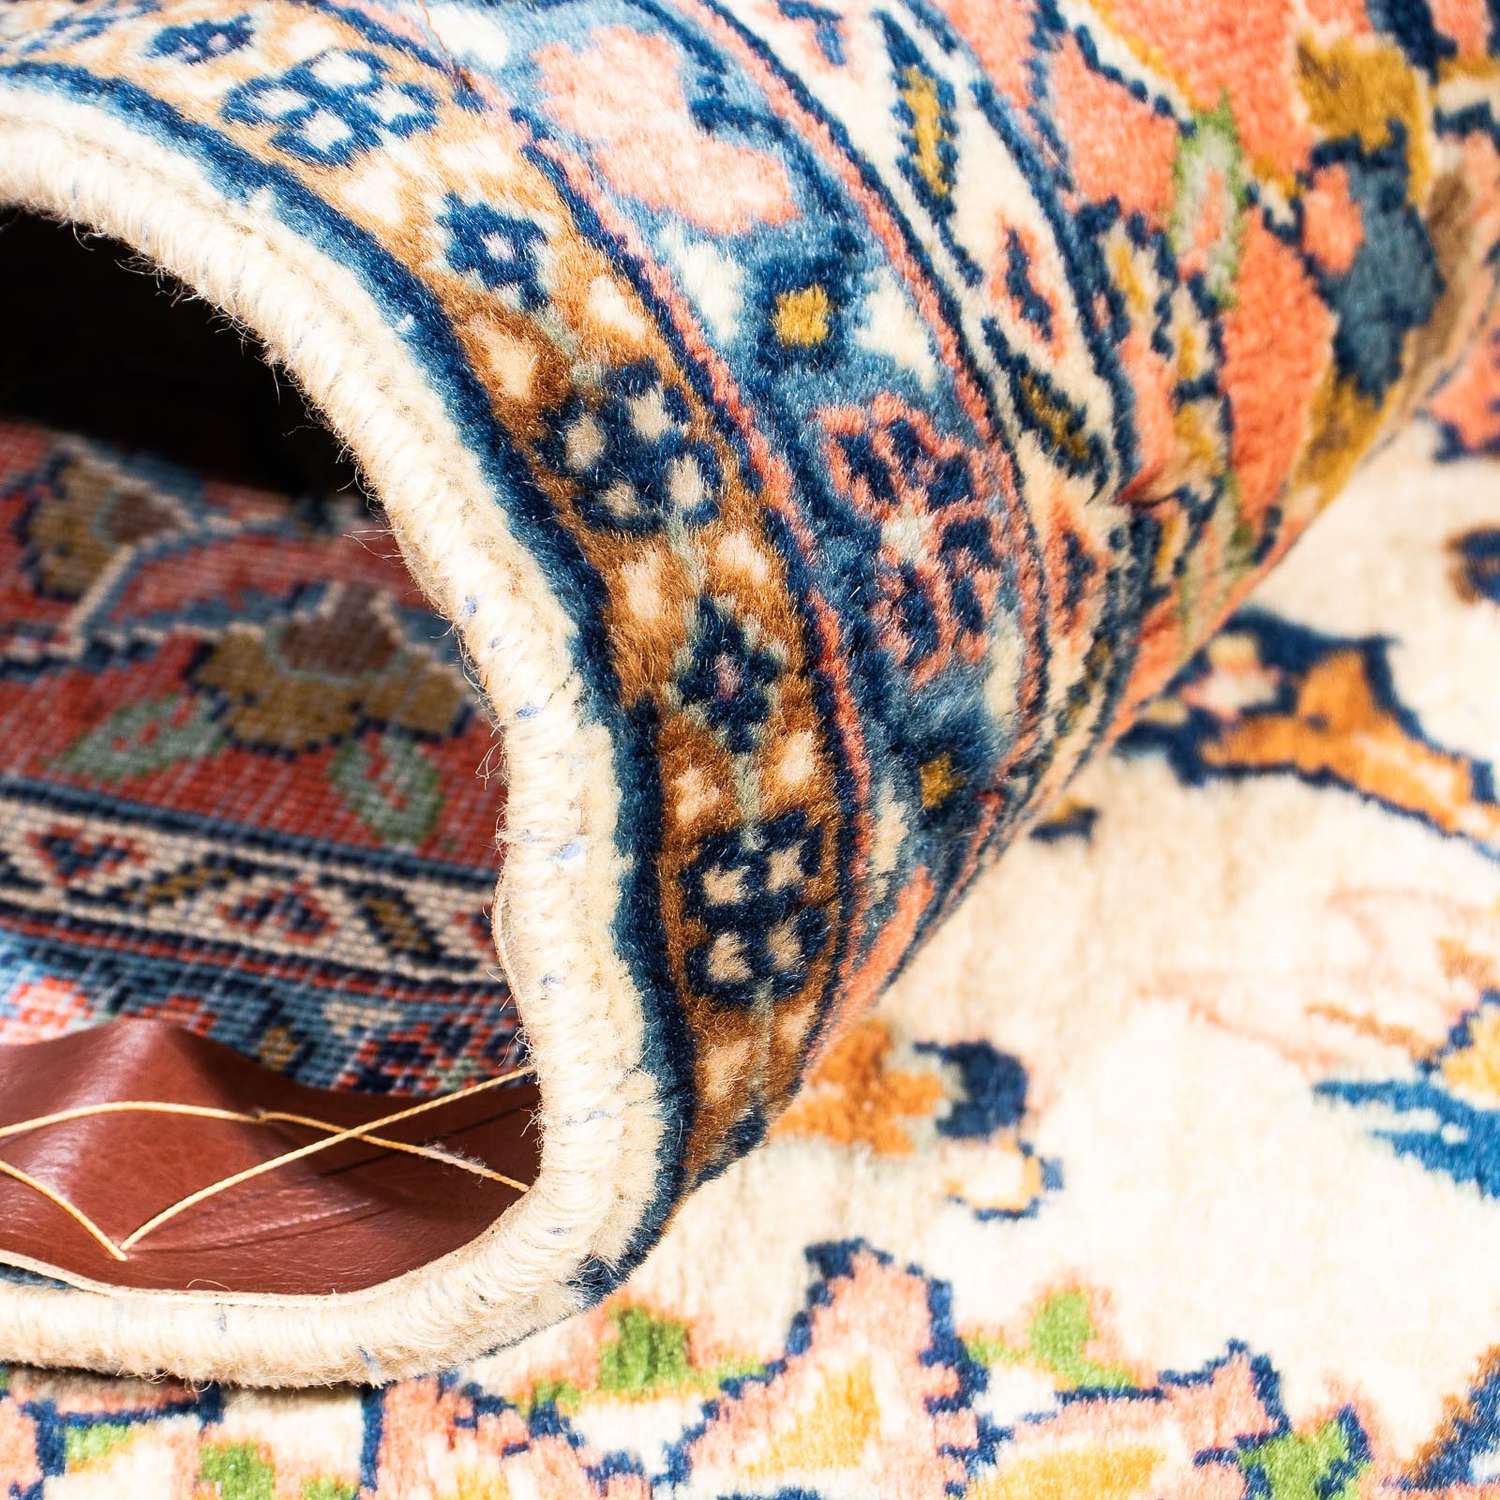 Perský koberec - Klasický - 281 x 207 cm - béžová